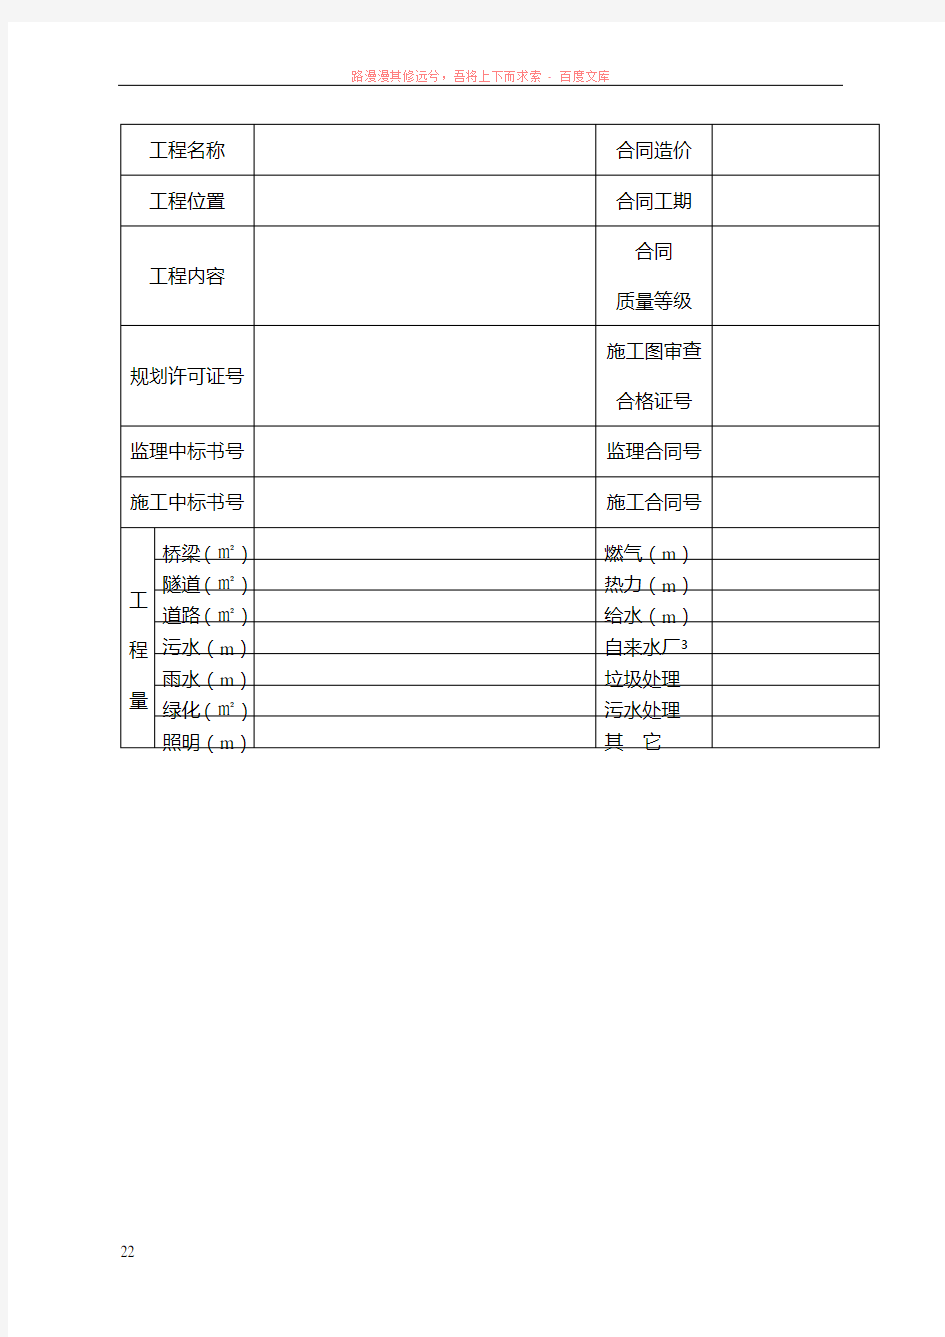 郑州市市政基础设施工程质量监督登记表